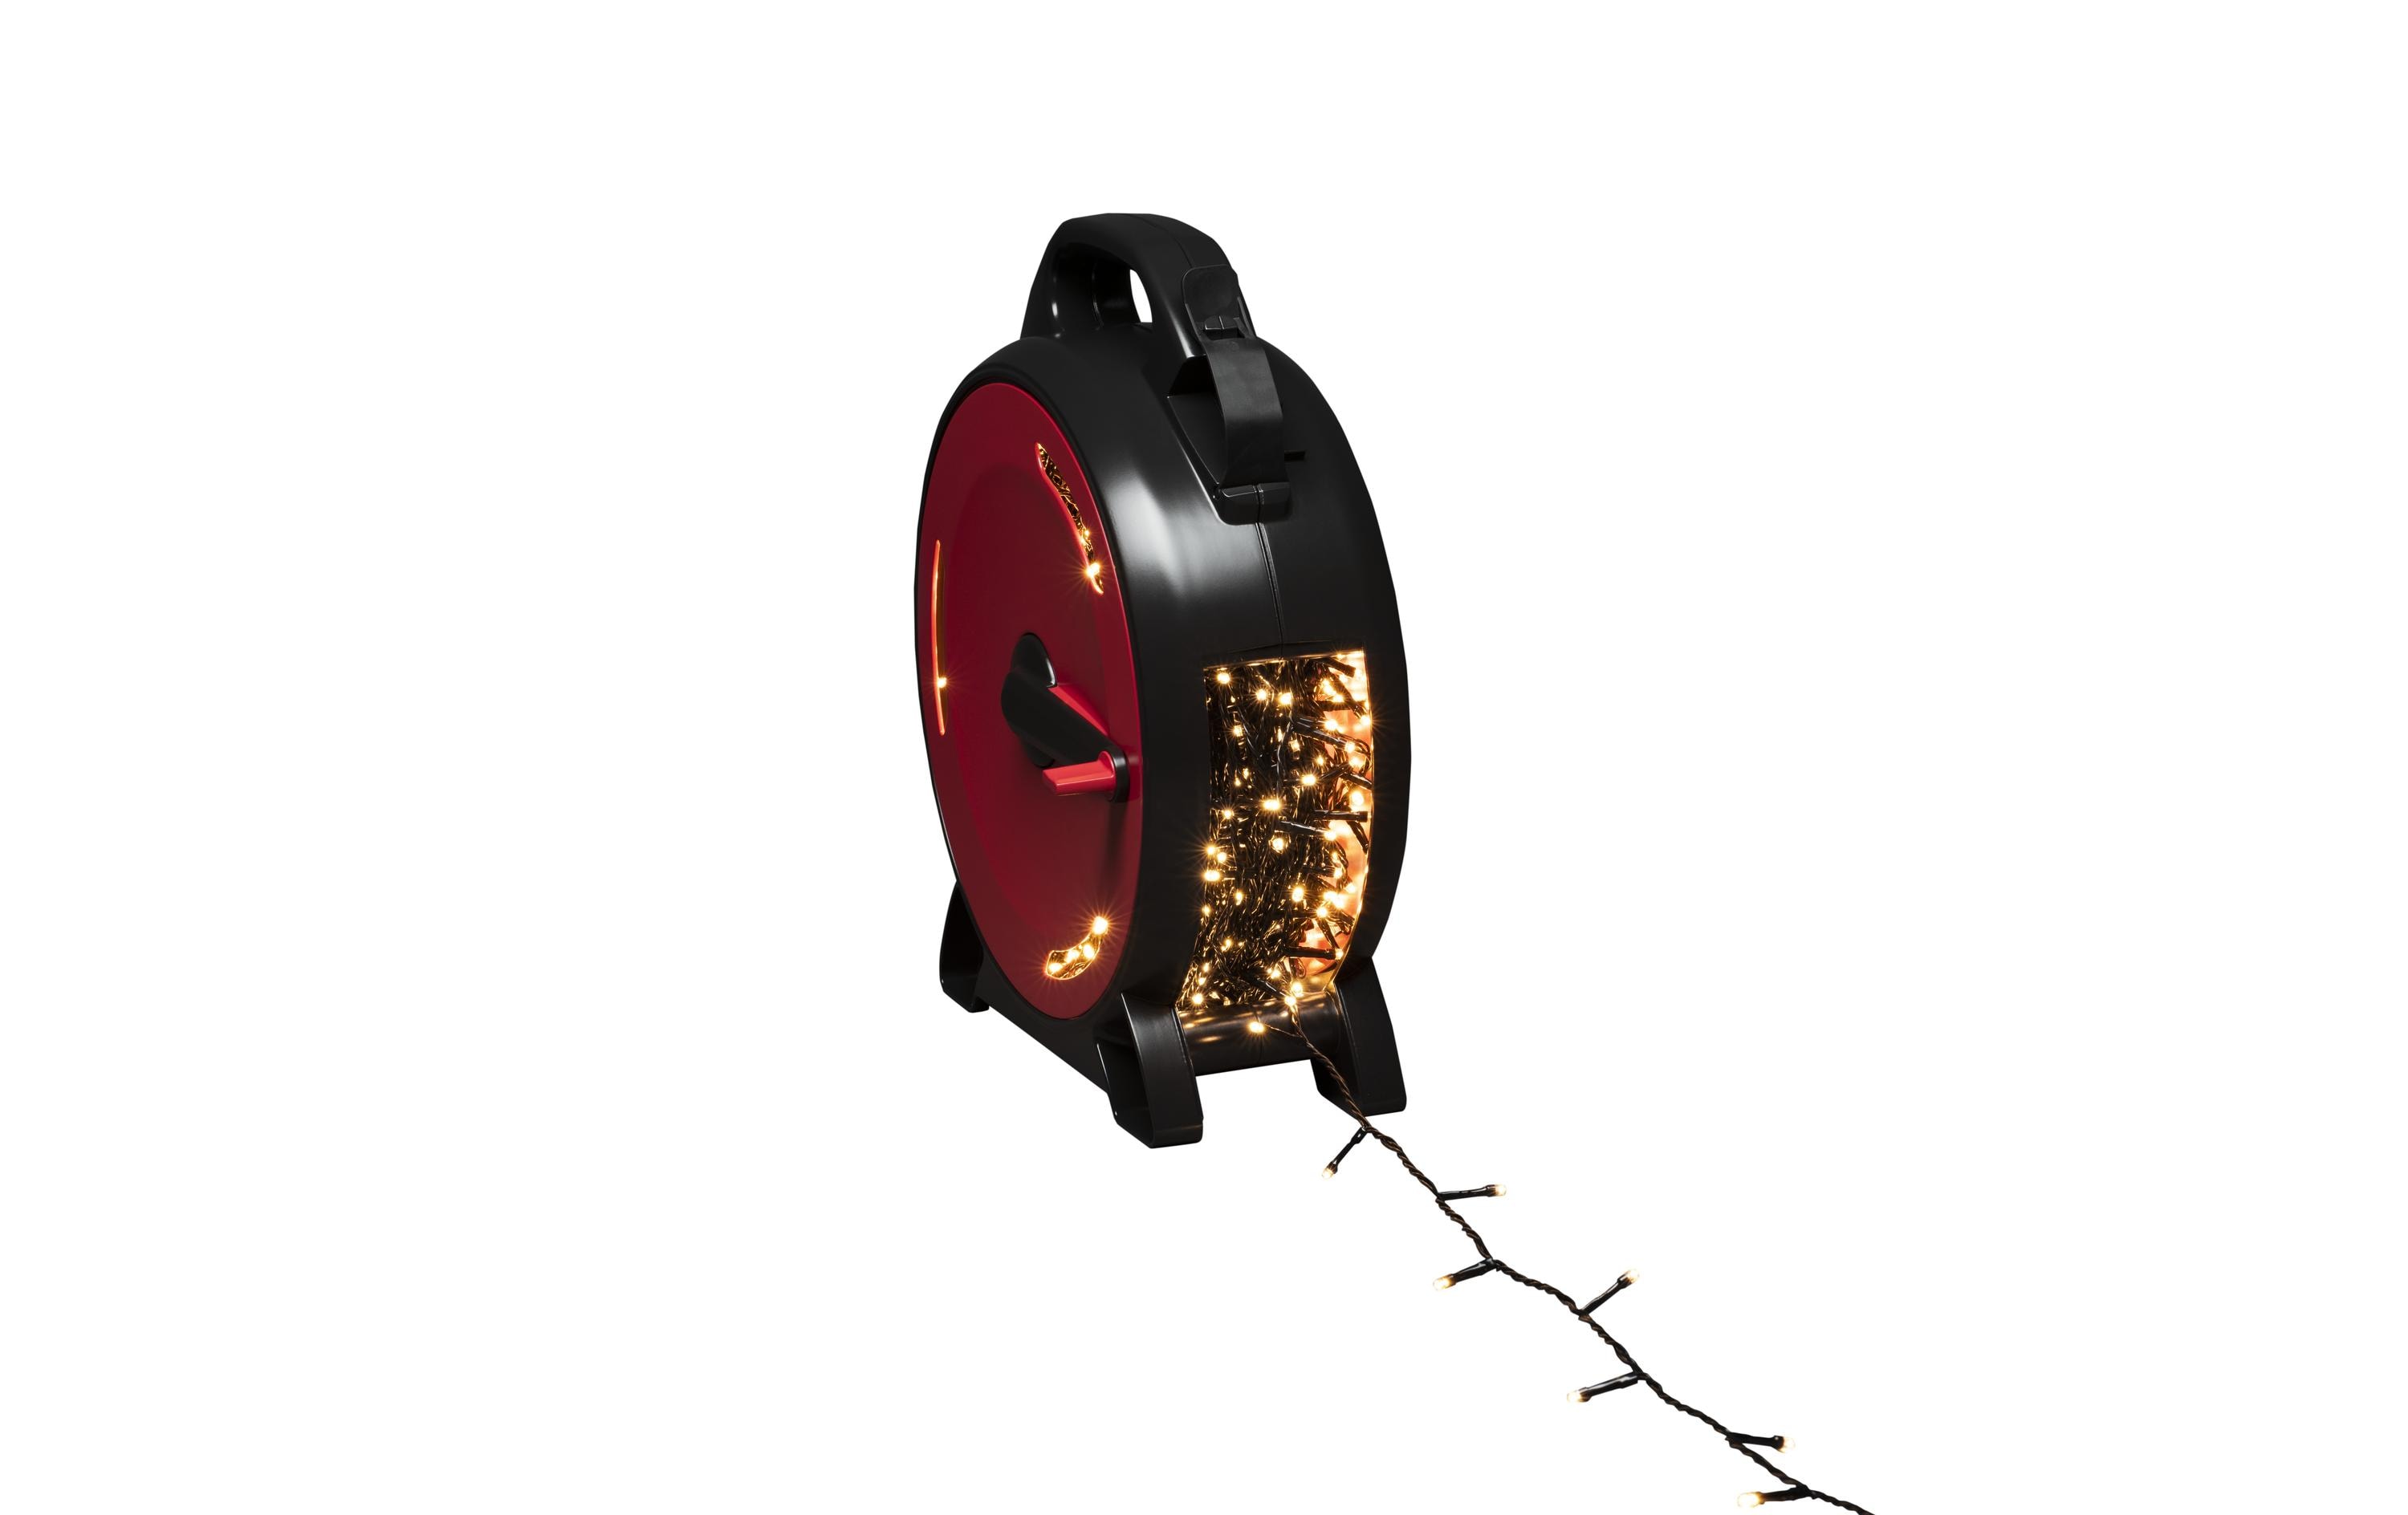 Konstsmide LED-Lichterkette Kabelaufroller, 800 LED, 55.9 m, Outdoor